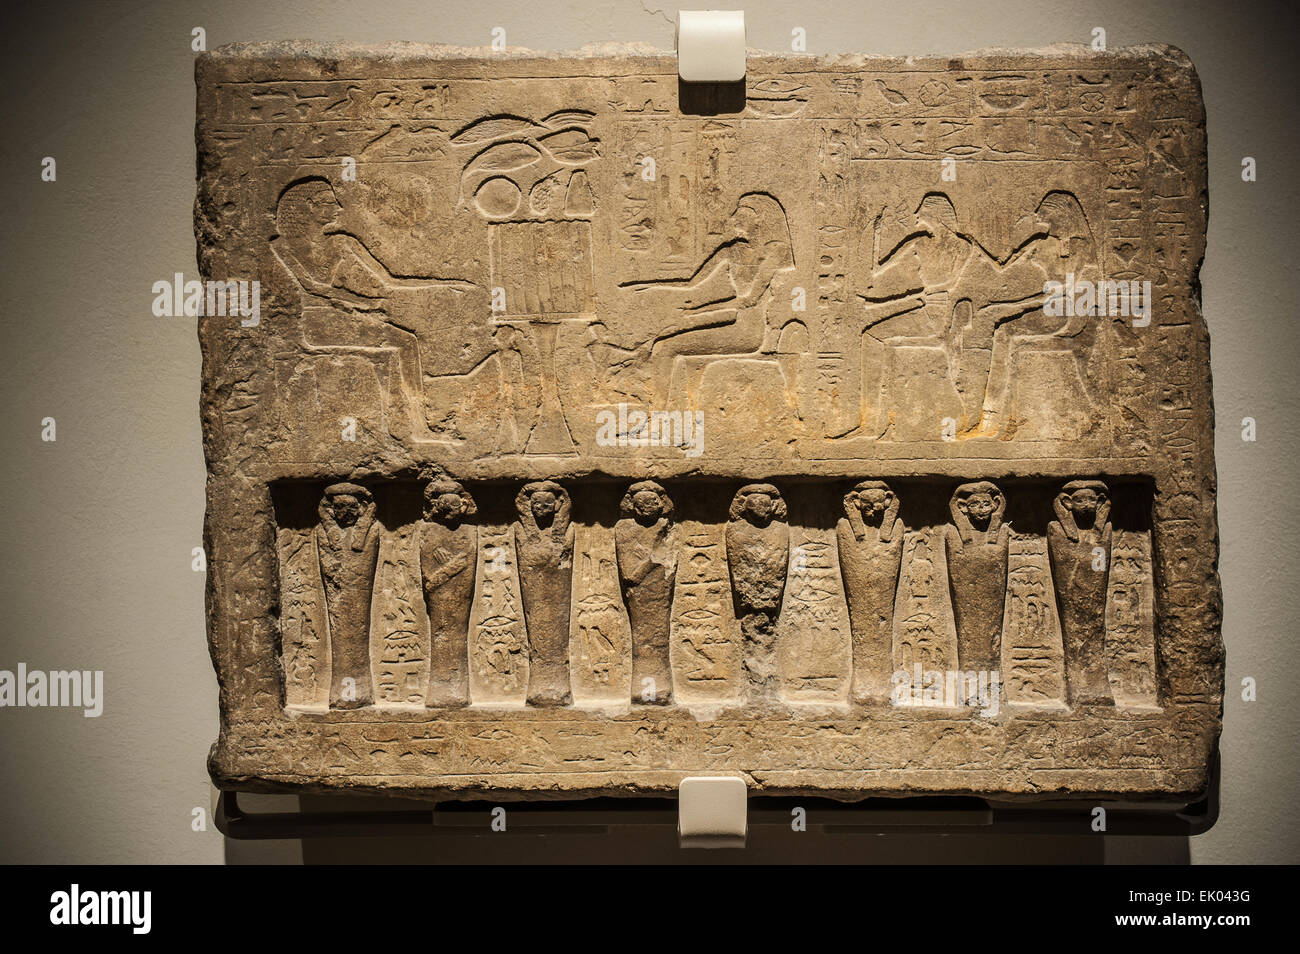 Italia Piemonte Torino Museo Egizio nuovo allestimento - Sala 4 - Famiglia stela del funzionario Saherhotep e sua moglie, Ipet con altezza -rilief rappresentazione di otto cifre mummiform (1759 -1700 BC ) Foto Stock